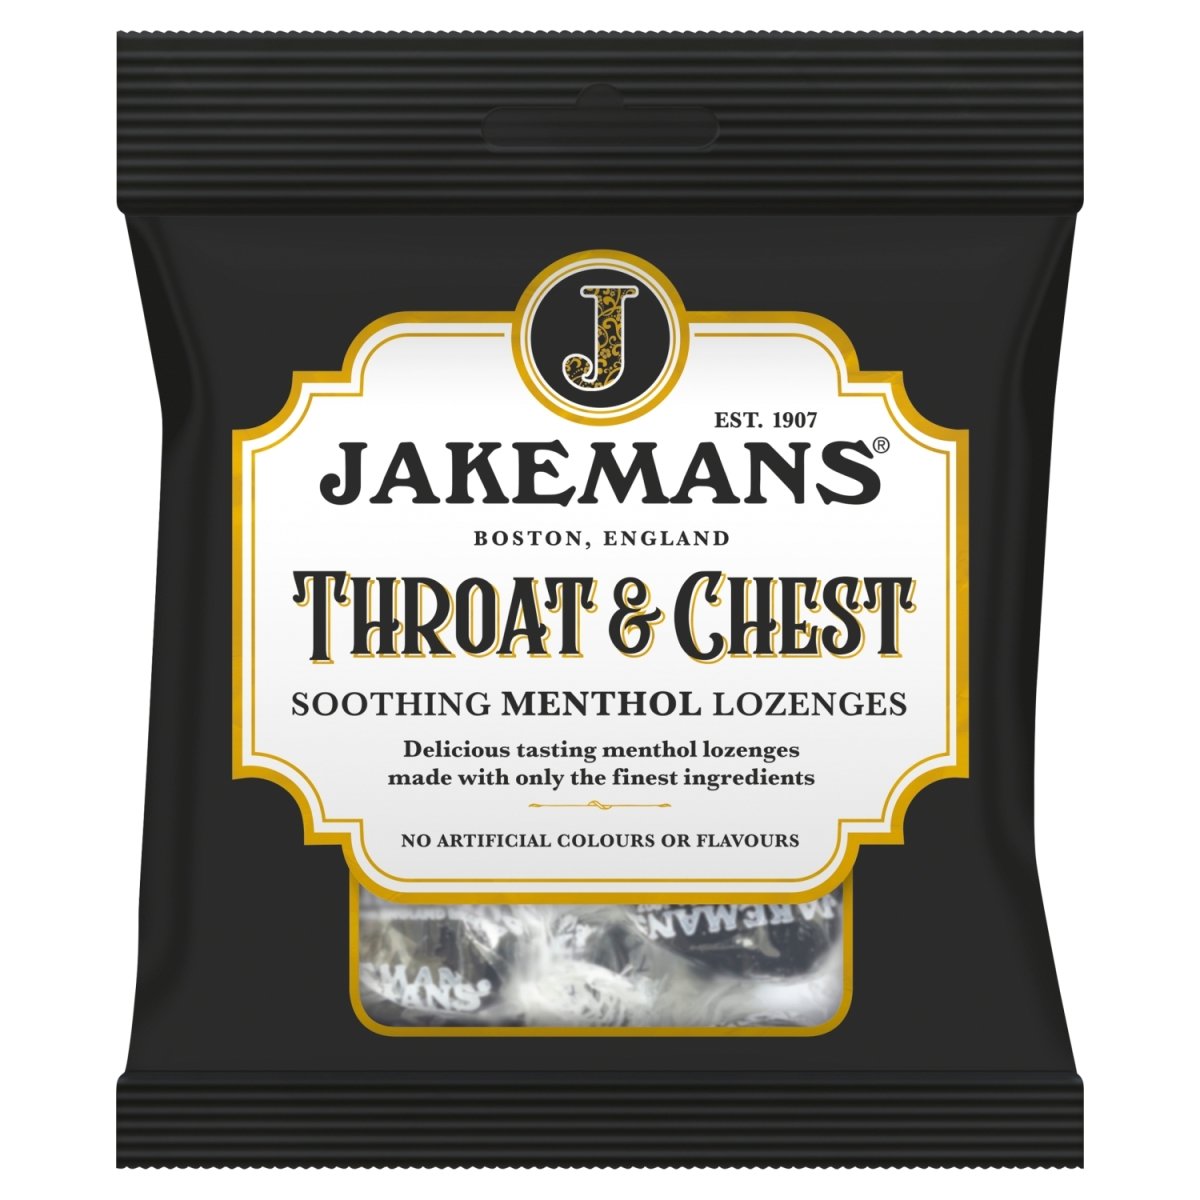 Jakemans Throat & Chest 73g 12 Pack - Intamarque 5030104005064